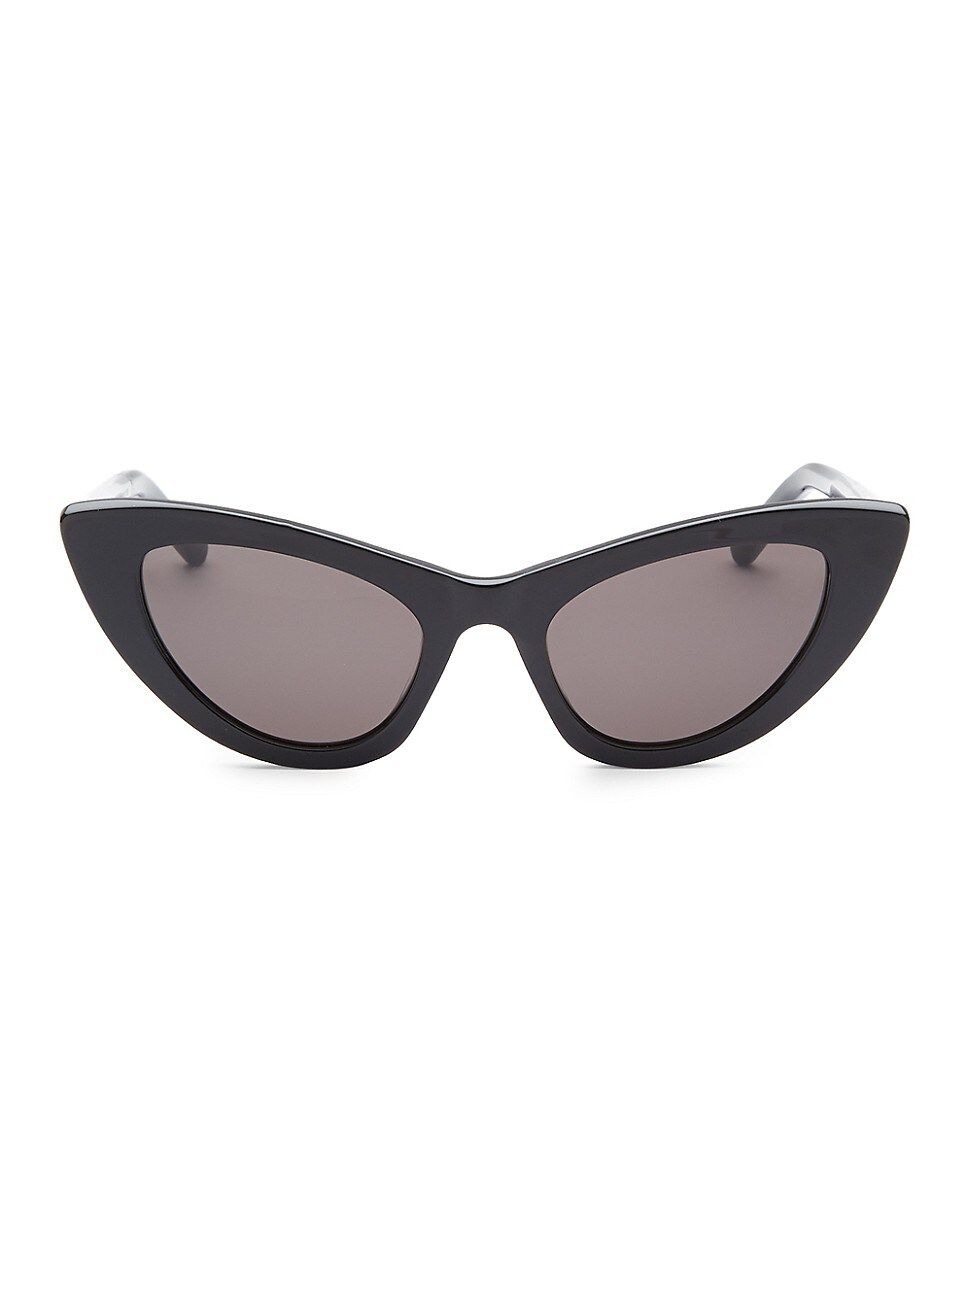 Saint Laurent Women's 52MM Black New Wave 213 Lily Sunglasses - Black | Saks Fifth Avenue